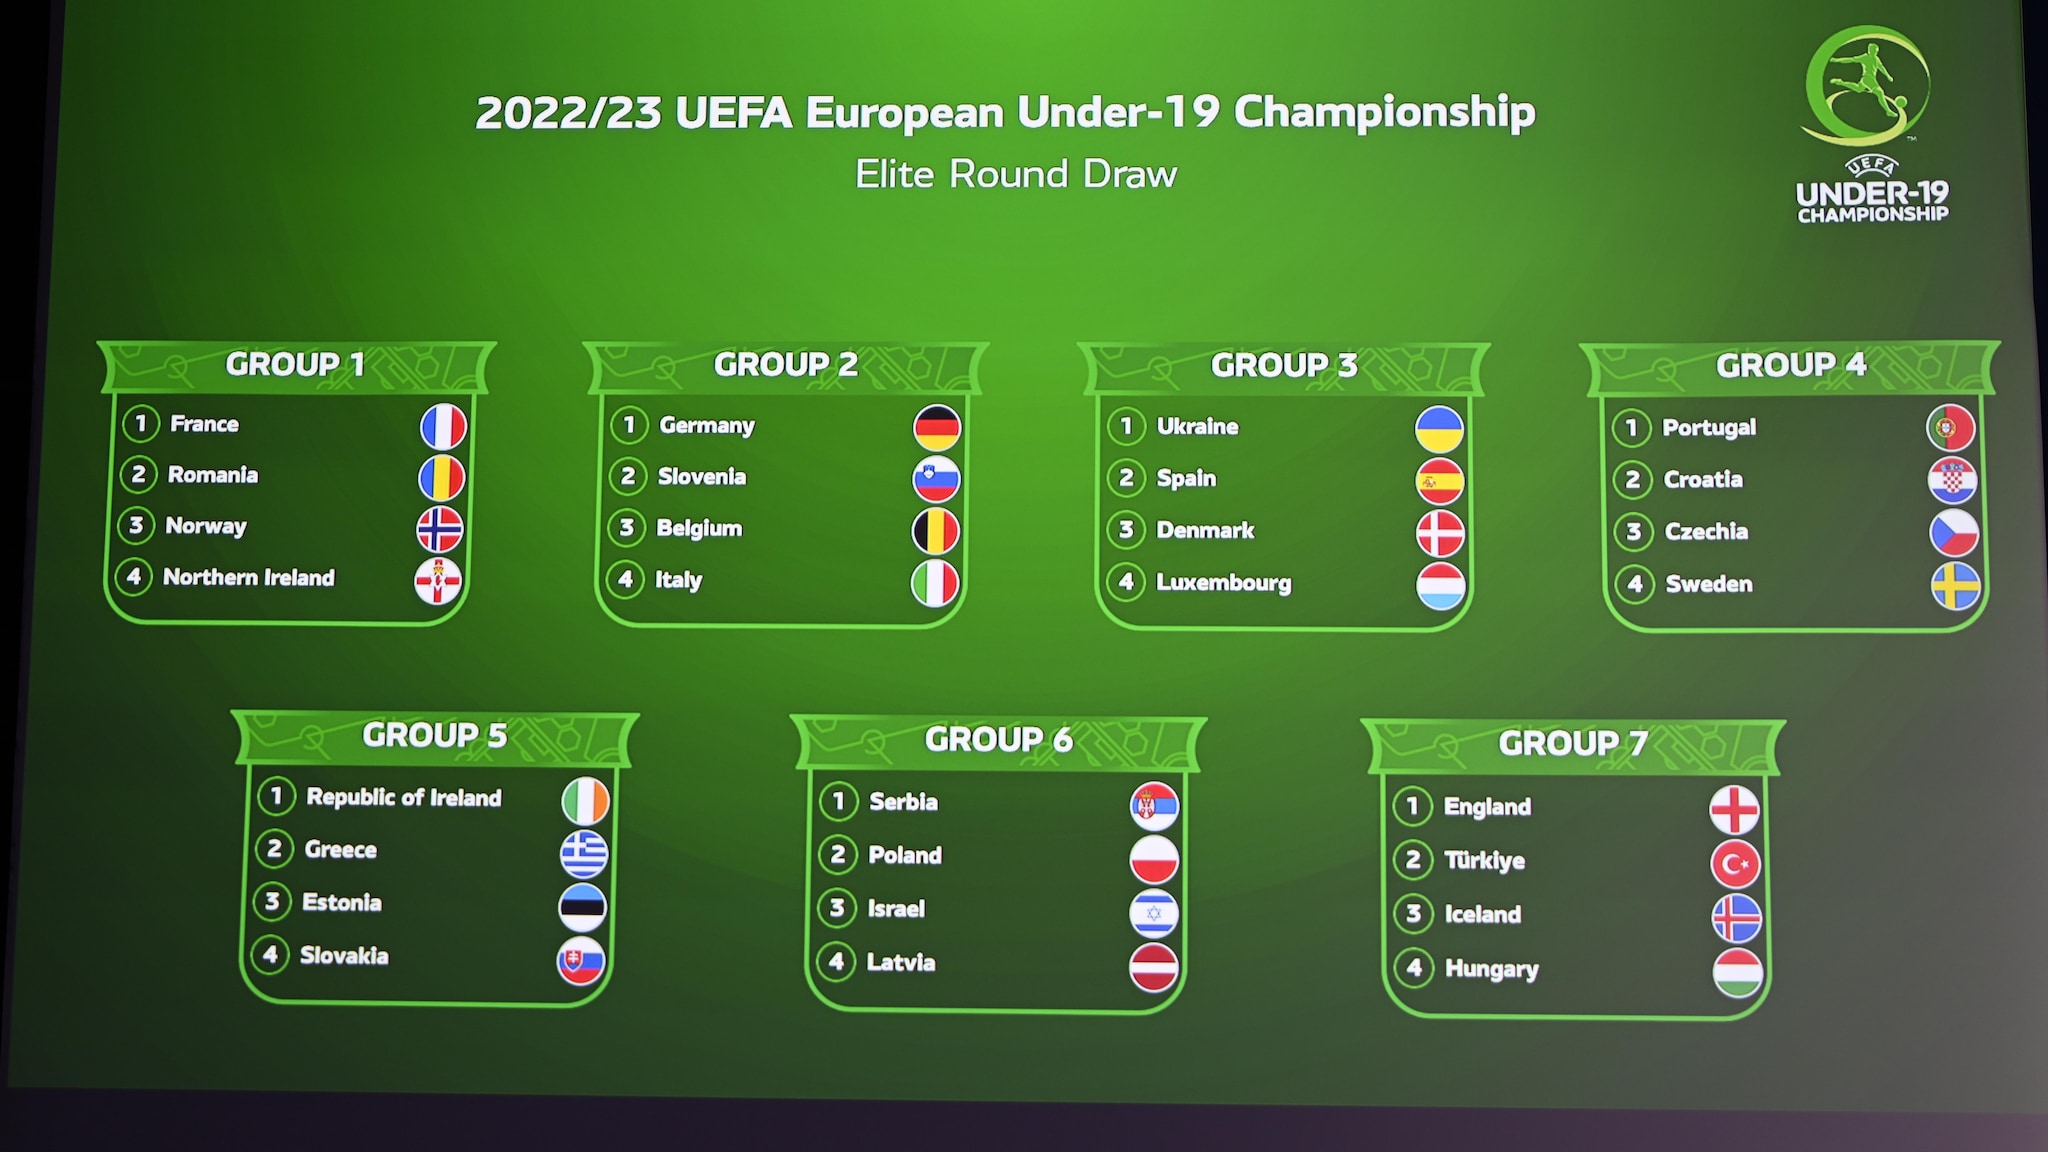 Guia da ronda de elite do Europeu sub-19 2022/23 |  europeu sub-19